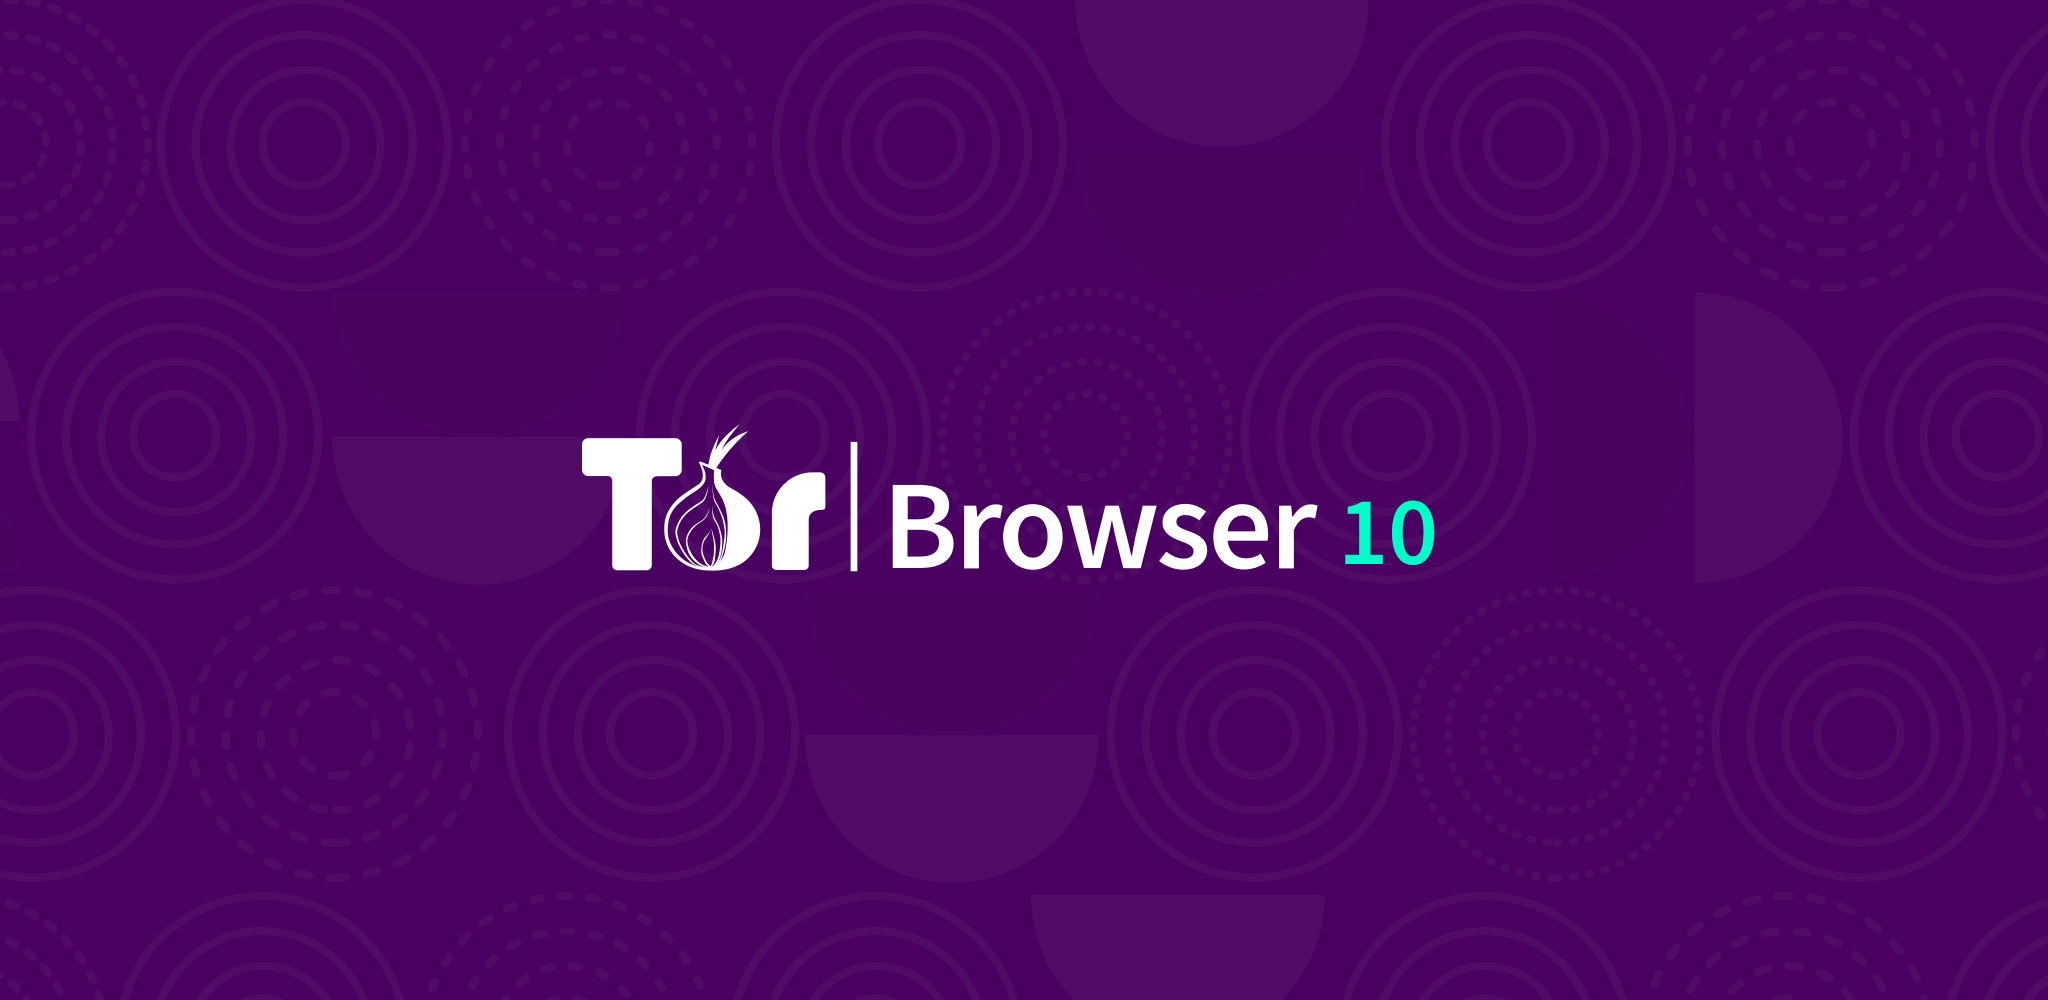 Tor browser upgrade mega ip для тор браузера mega